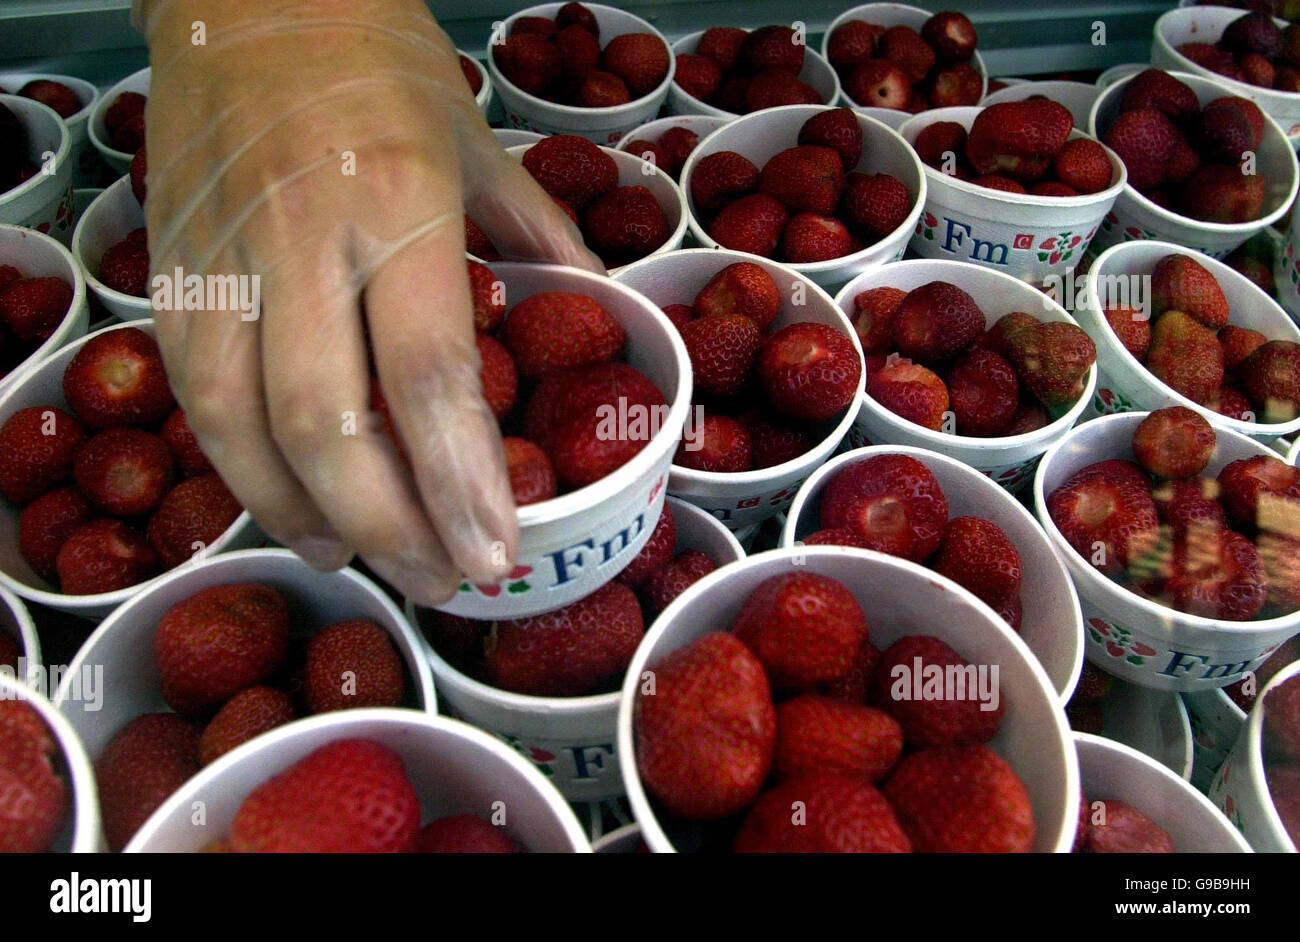 BIBLIOTHEKSFILER vom 25/06/01 von Erdbeeren, die an den Catering-Ständen zubereitet werden, bevor die Tore bei den Wimbledon Championships für die Öffentlichkeit geöffnet werden. Stockfoto